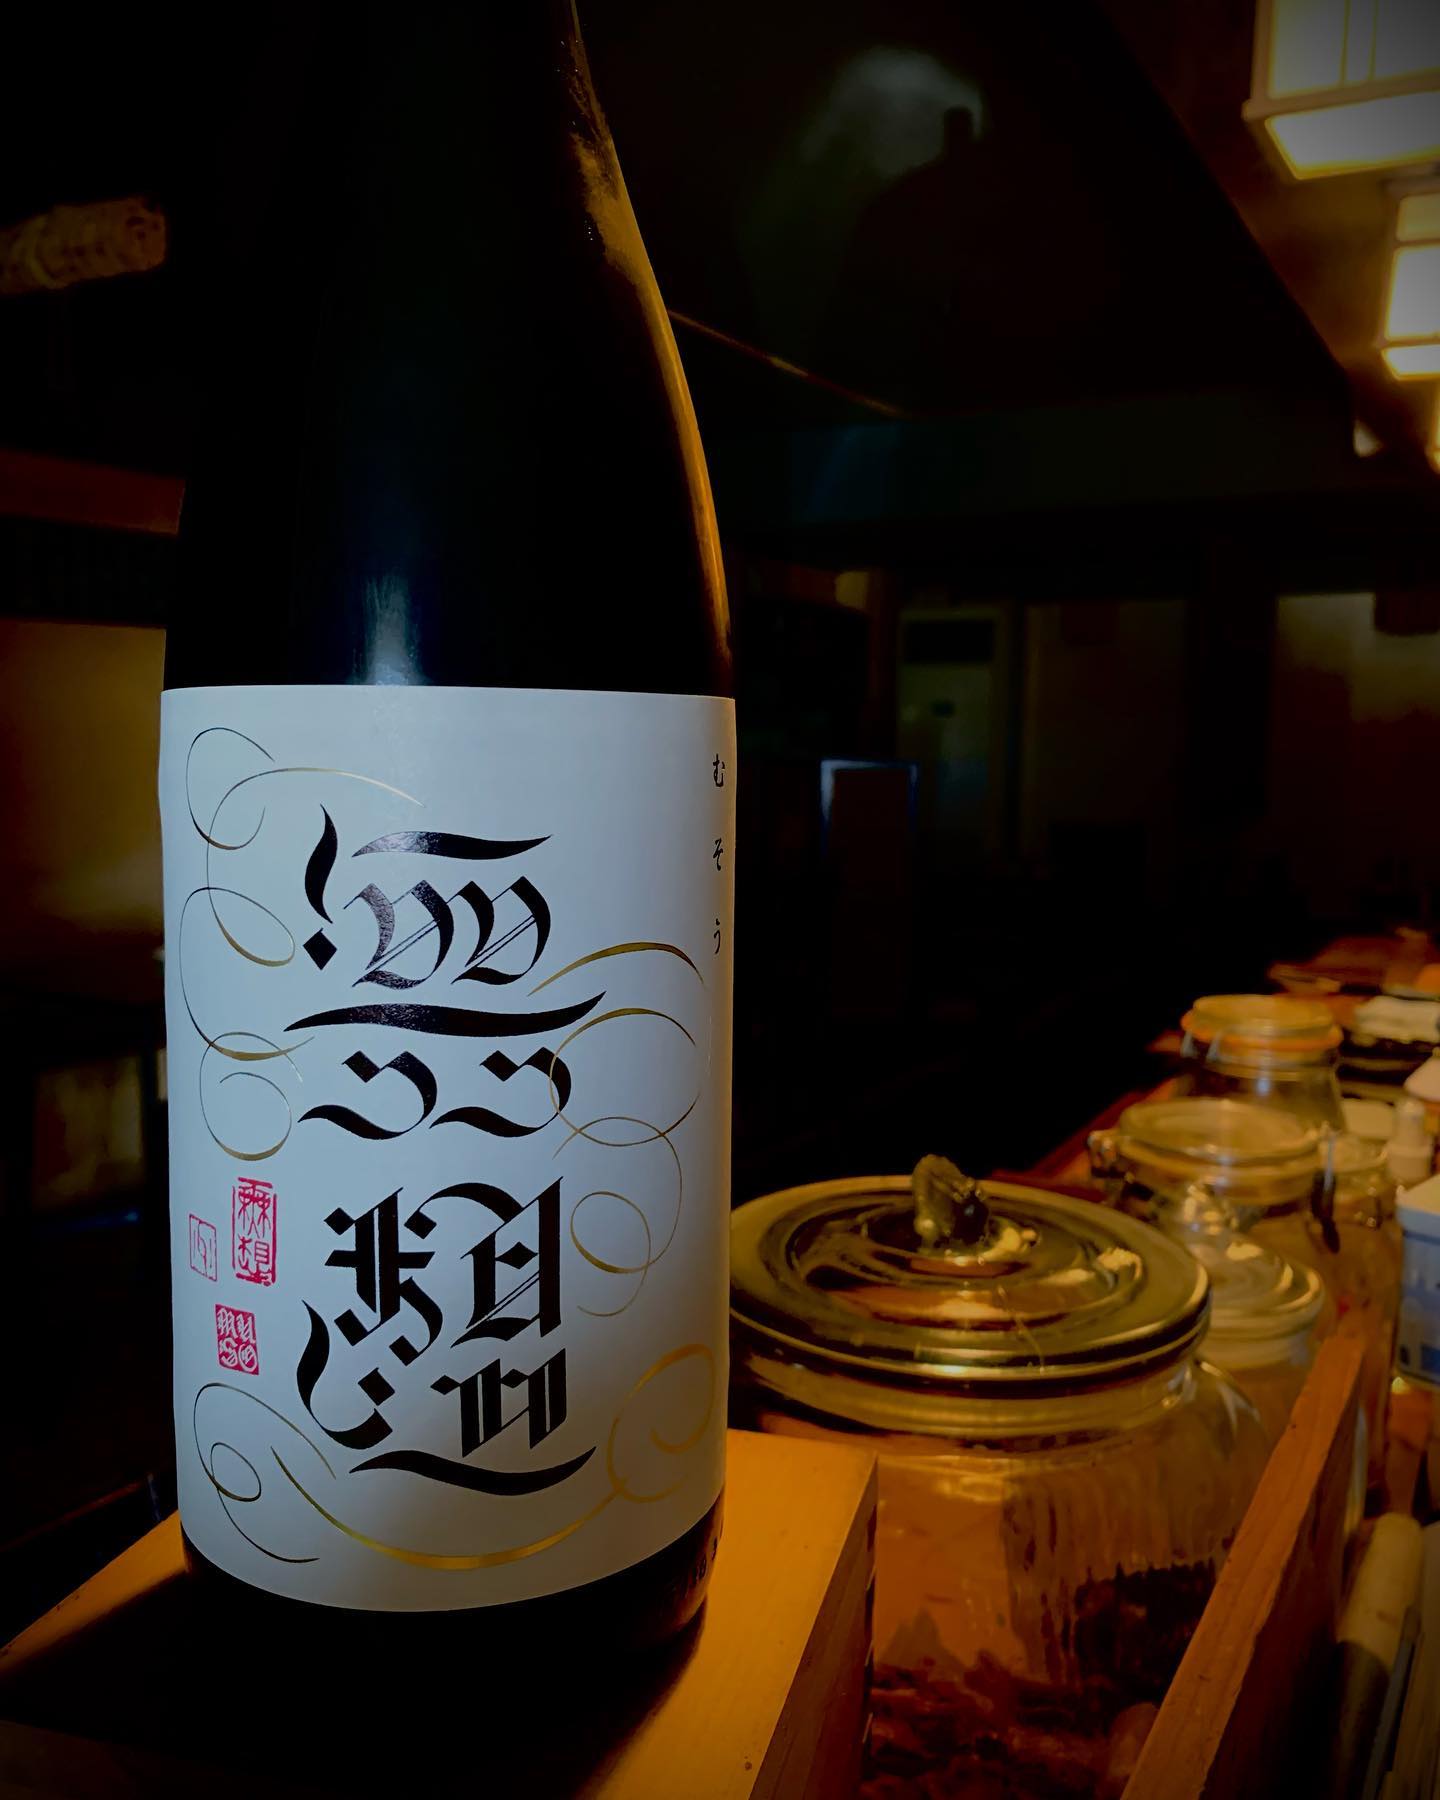 本日の日本酒紹介️
「無想」新潟県産

フレッシュなチリチリ感（超微炭酸）を感じつつも、
口の中にふわりと広がる旨味。
辛口という名に相応しい優しく心地よい甘み。

 #